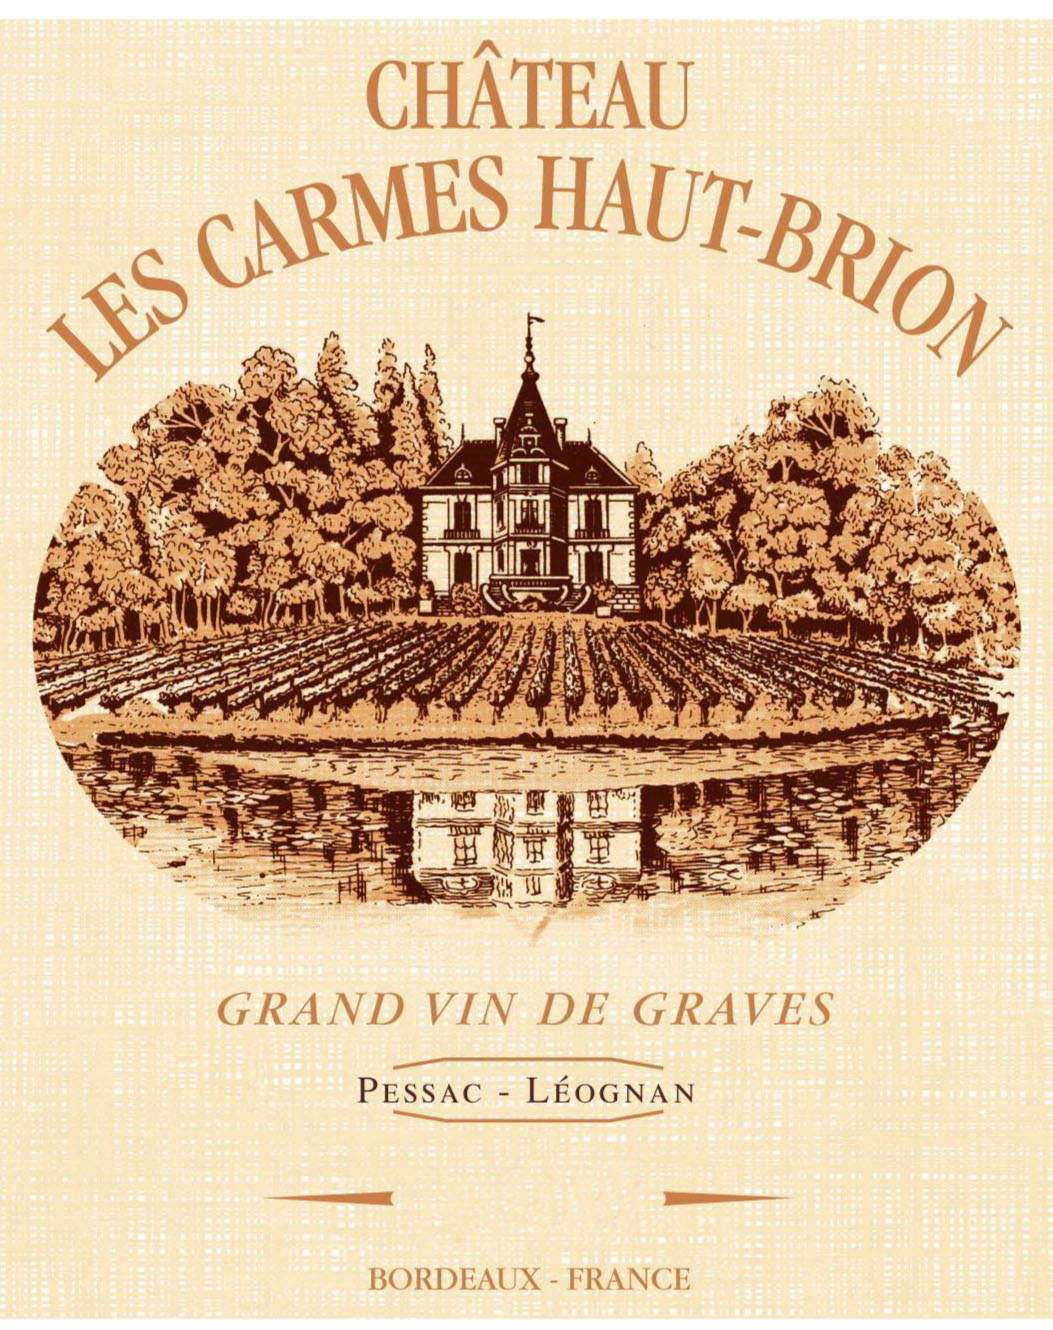 Chateau Les Carmes Haut-Brion label